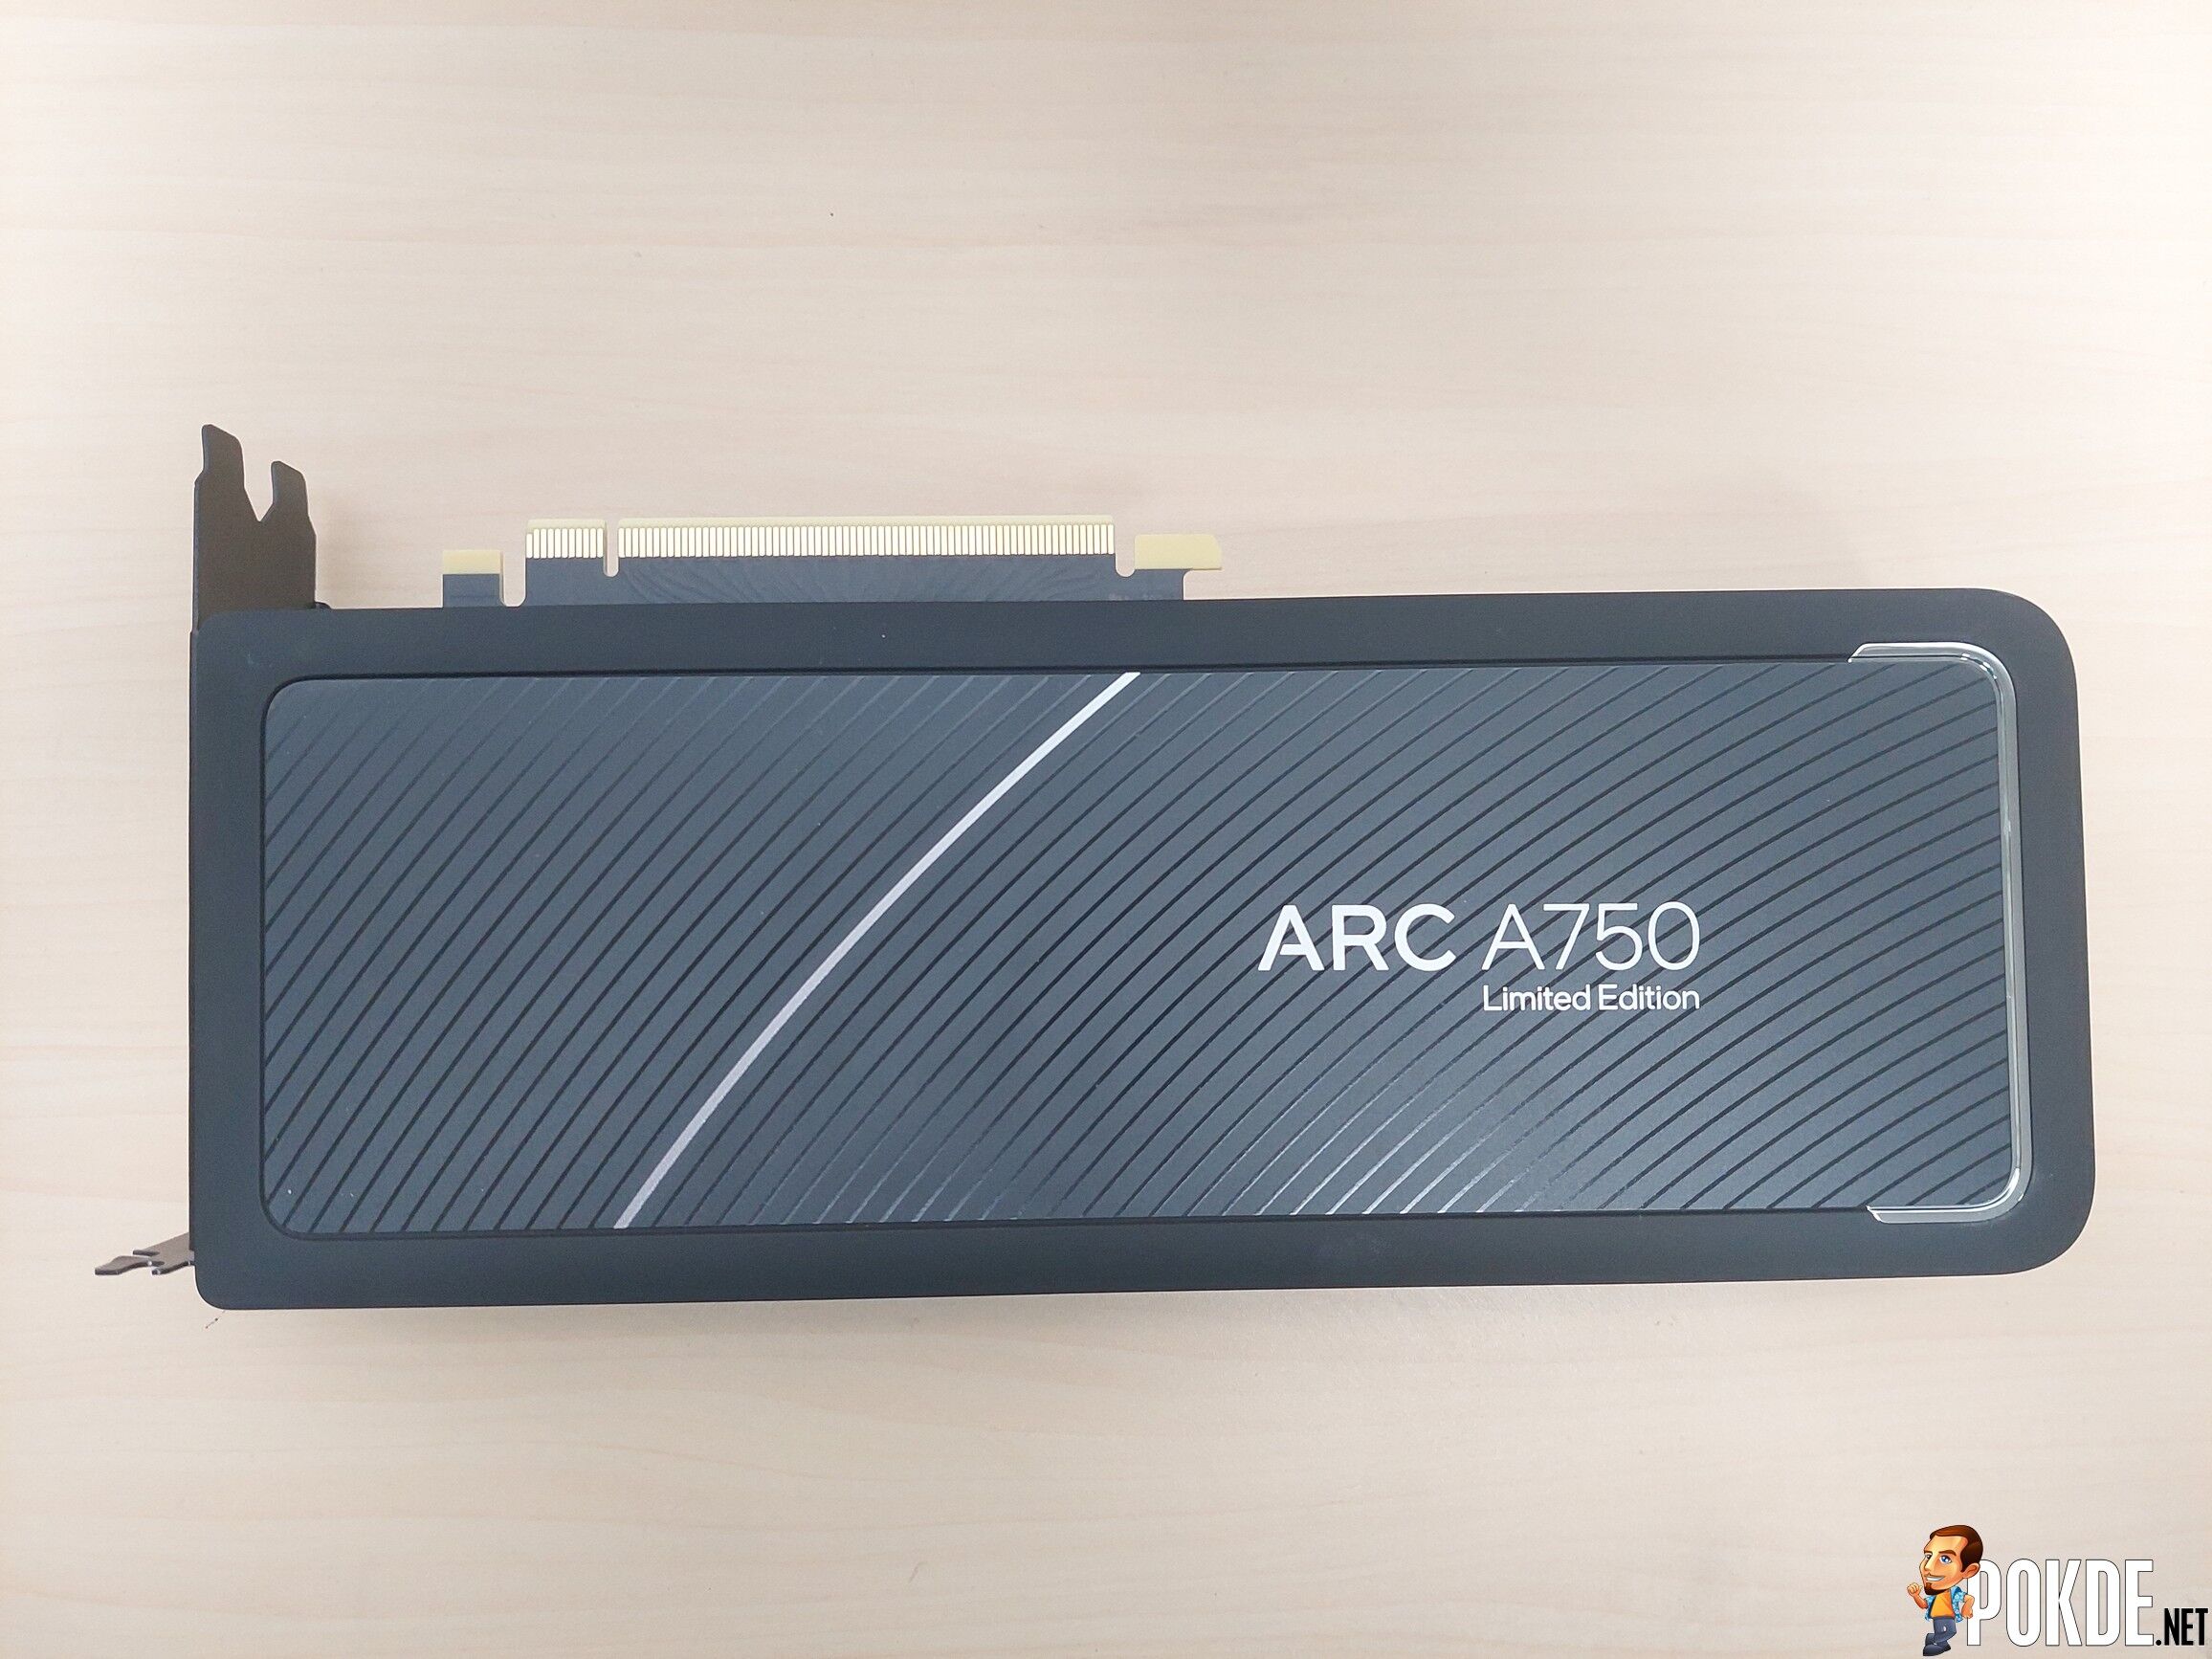 Intel Arc A750 Review - Redemption Arc? 38